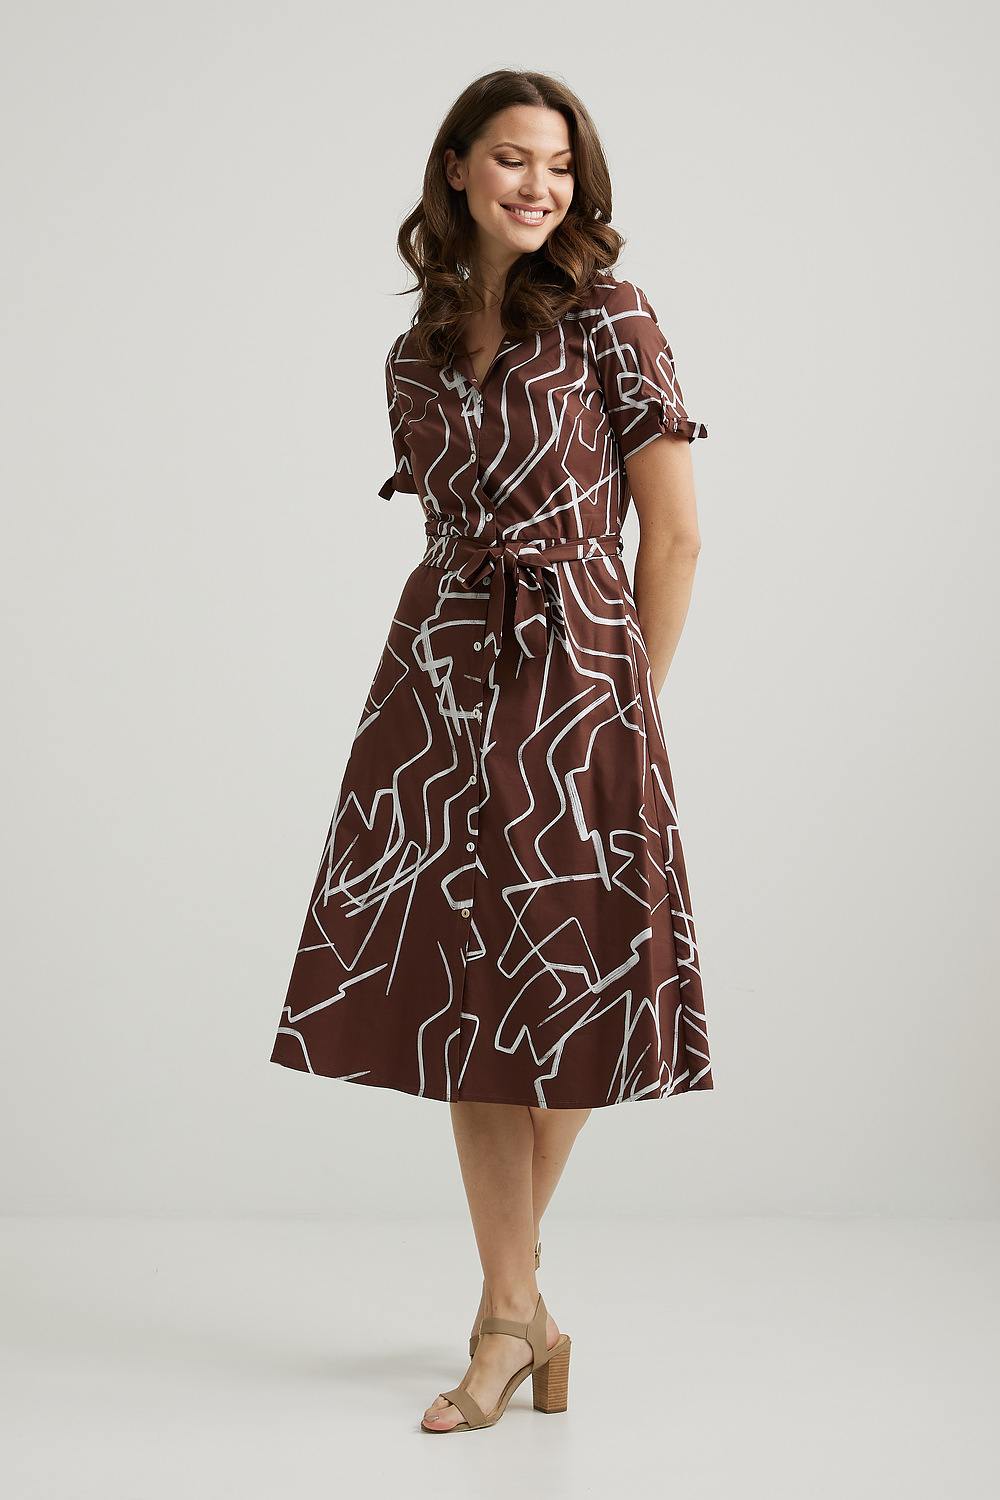 Joseph Ribkoff Abstract Print Shirt Dress Style 222111. Brown/vanilla